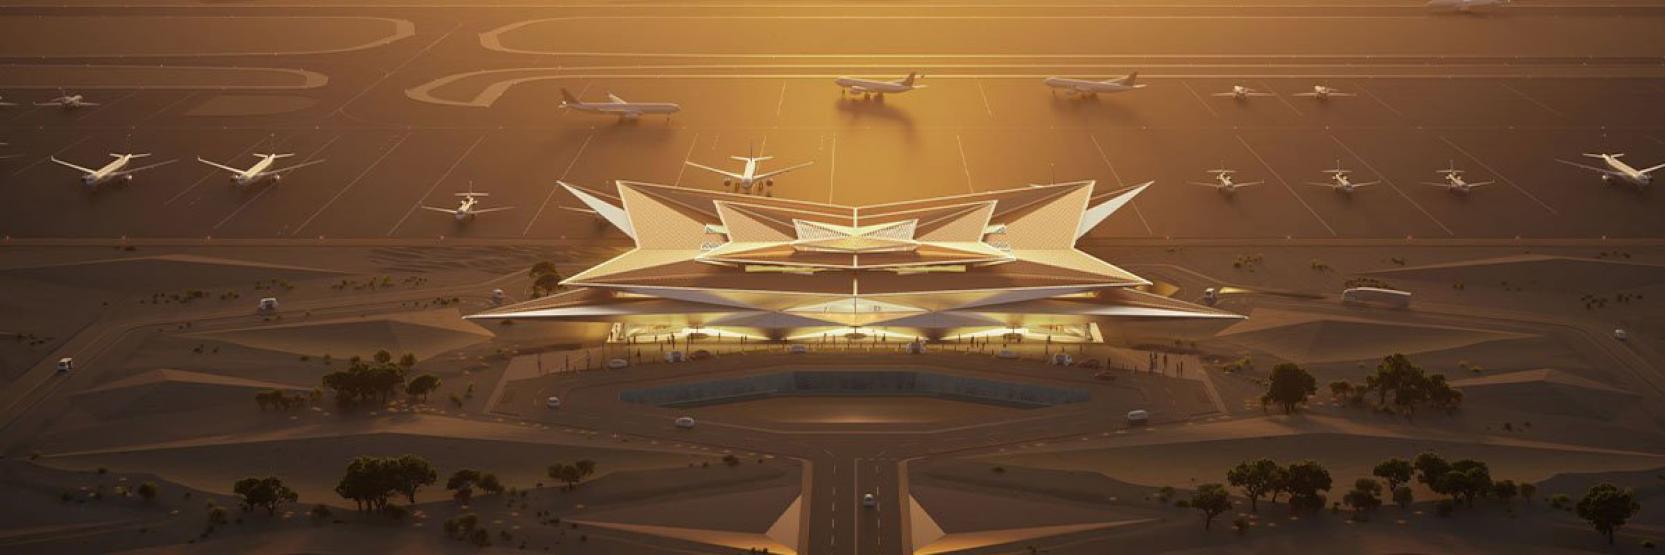 مطار أمالا الدولي Amaala  بتصميم السراب الصحراوي 